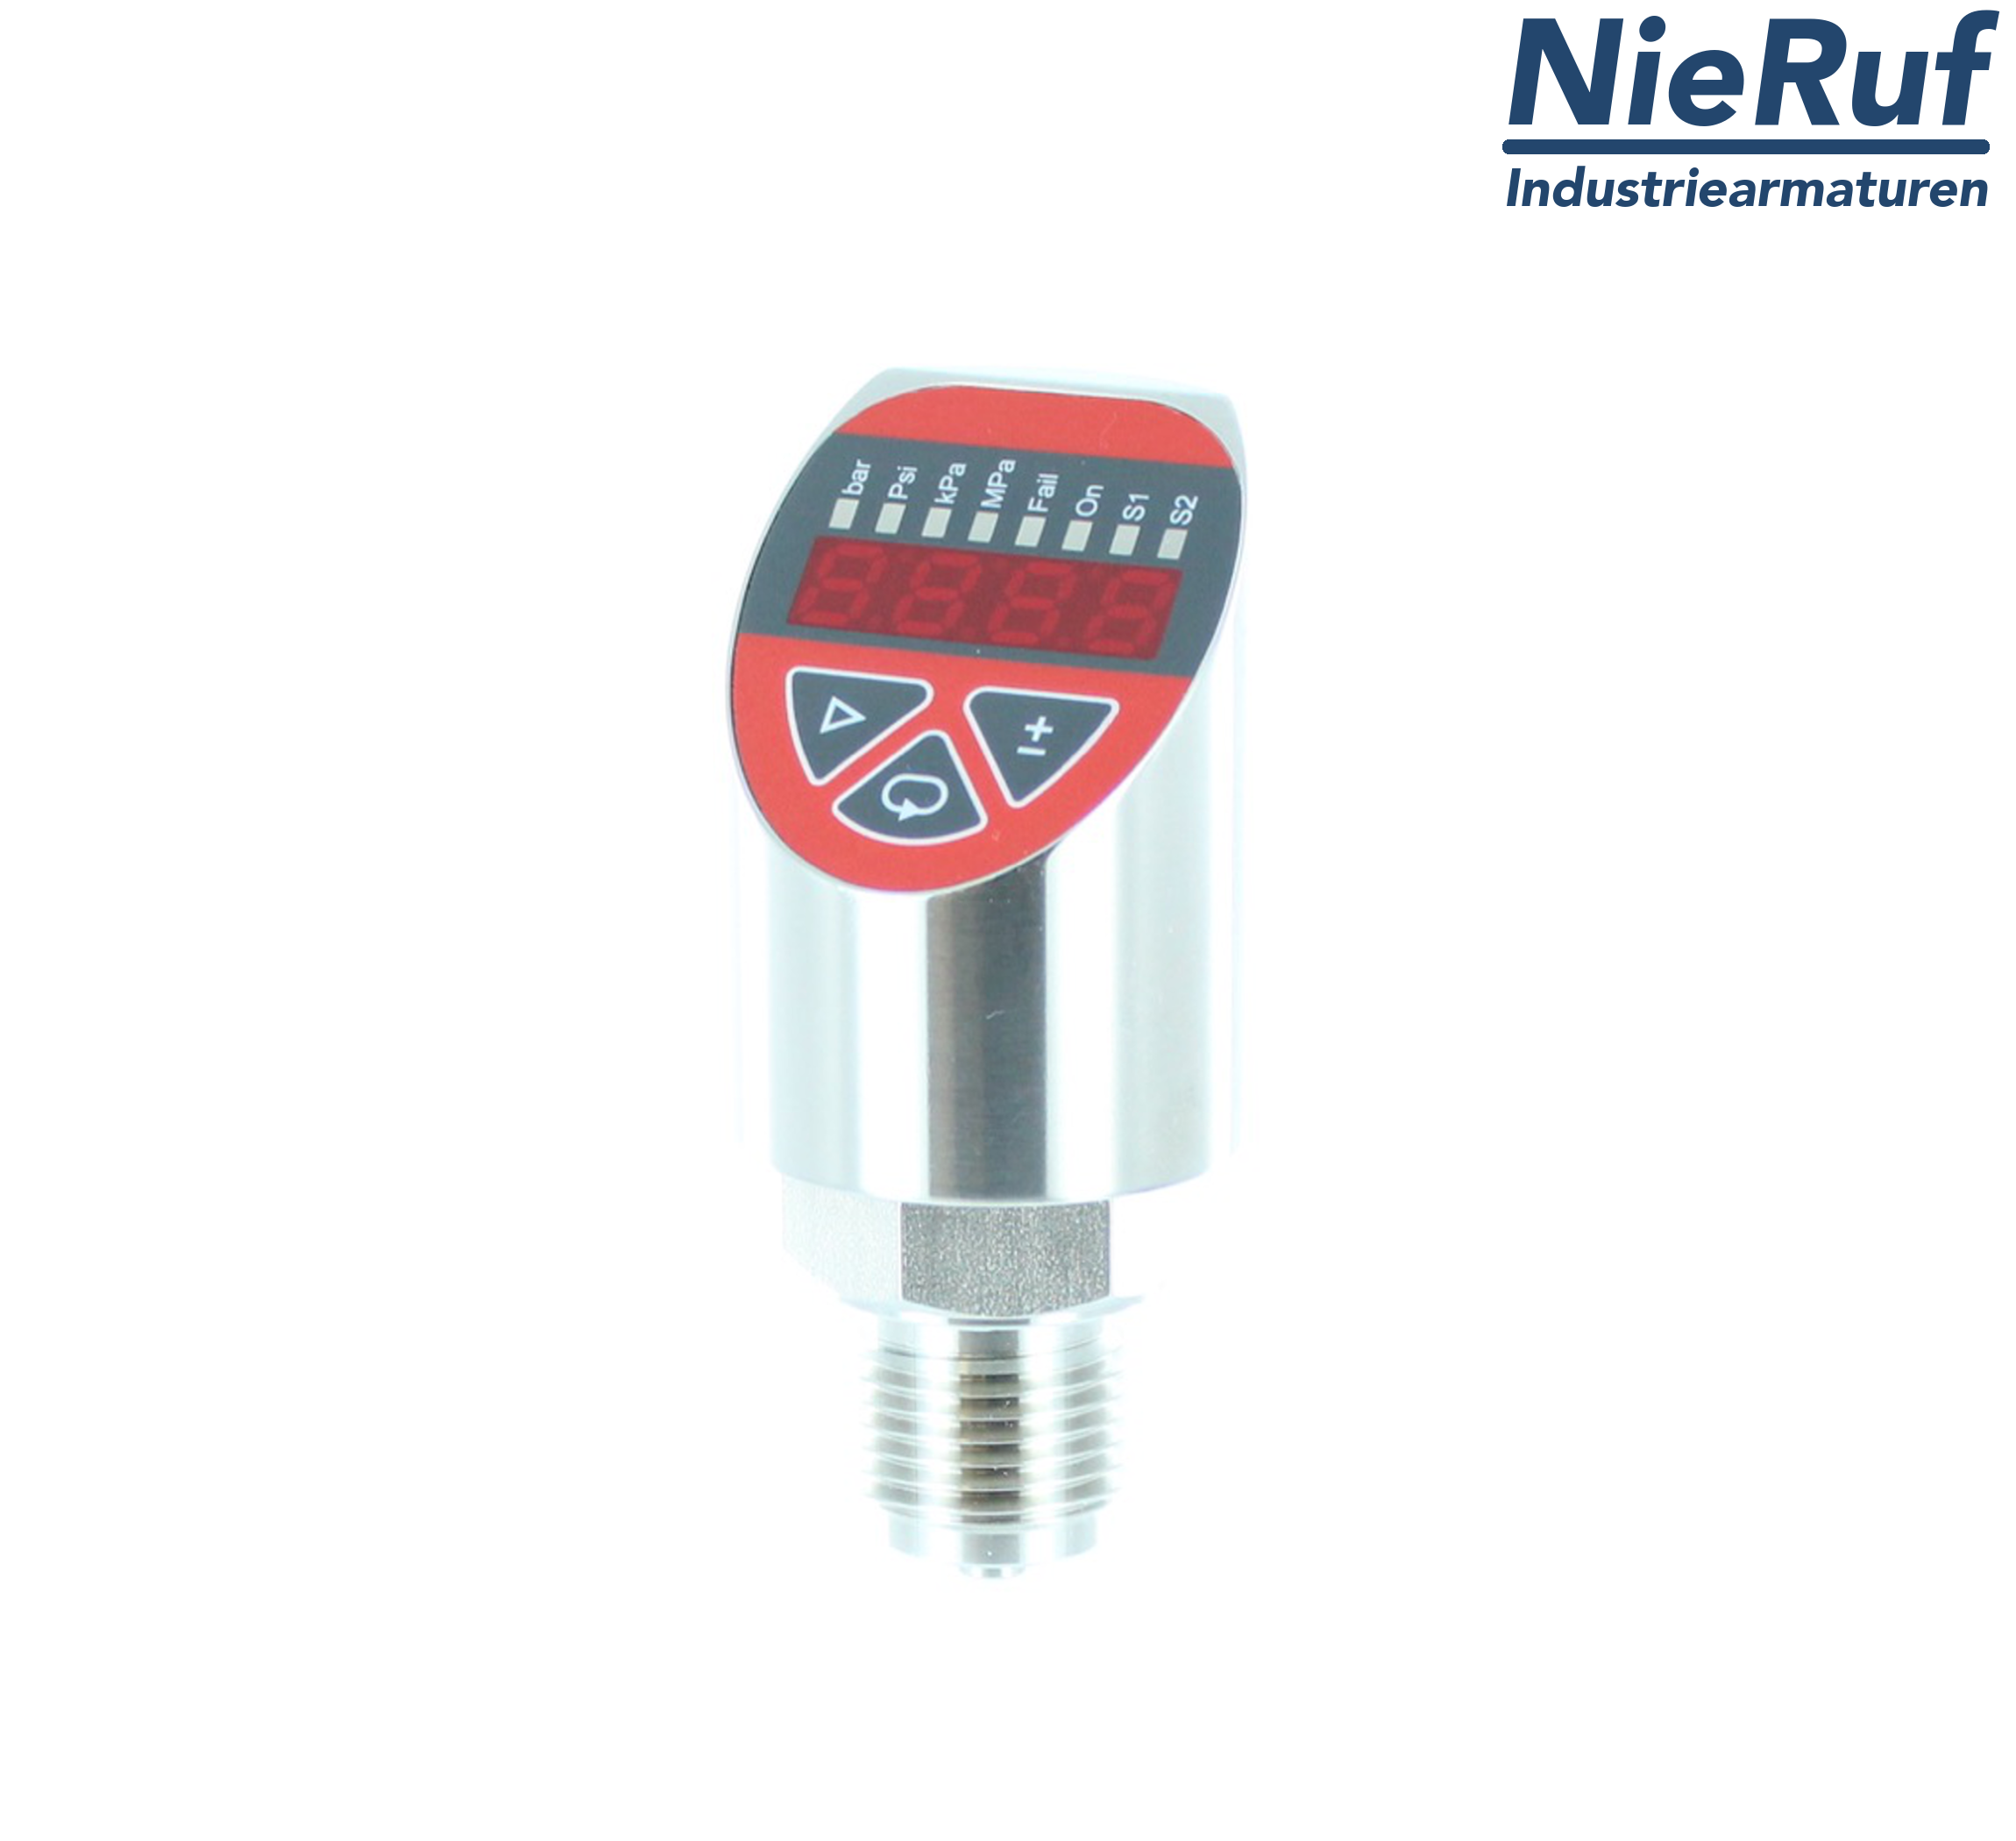 digital pressure sensor G 1/4" B 5-wire: 2xPNP, 1x4 - 20mA FPM 0,0 - 16,0 bar